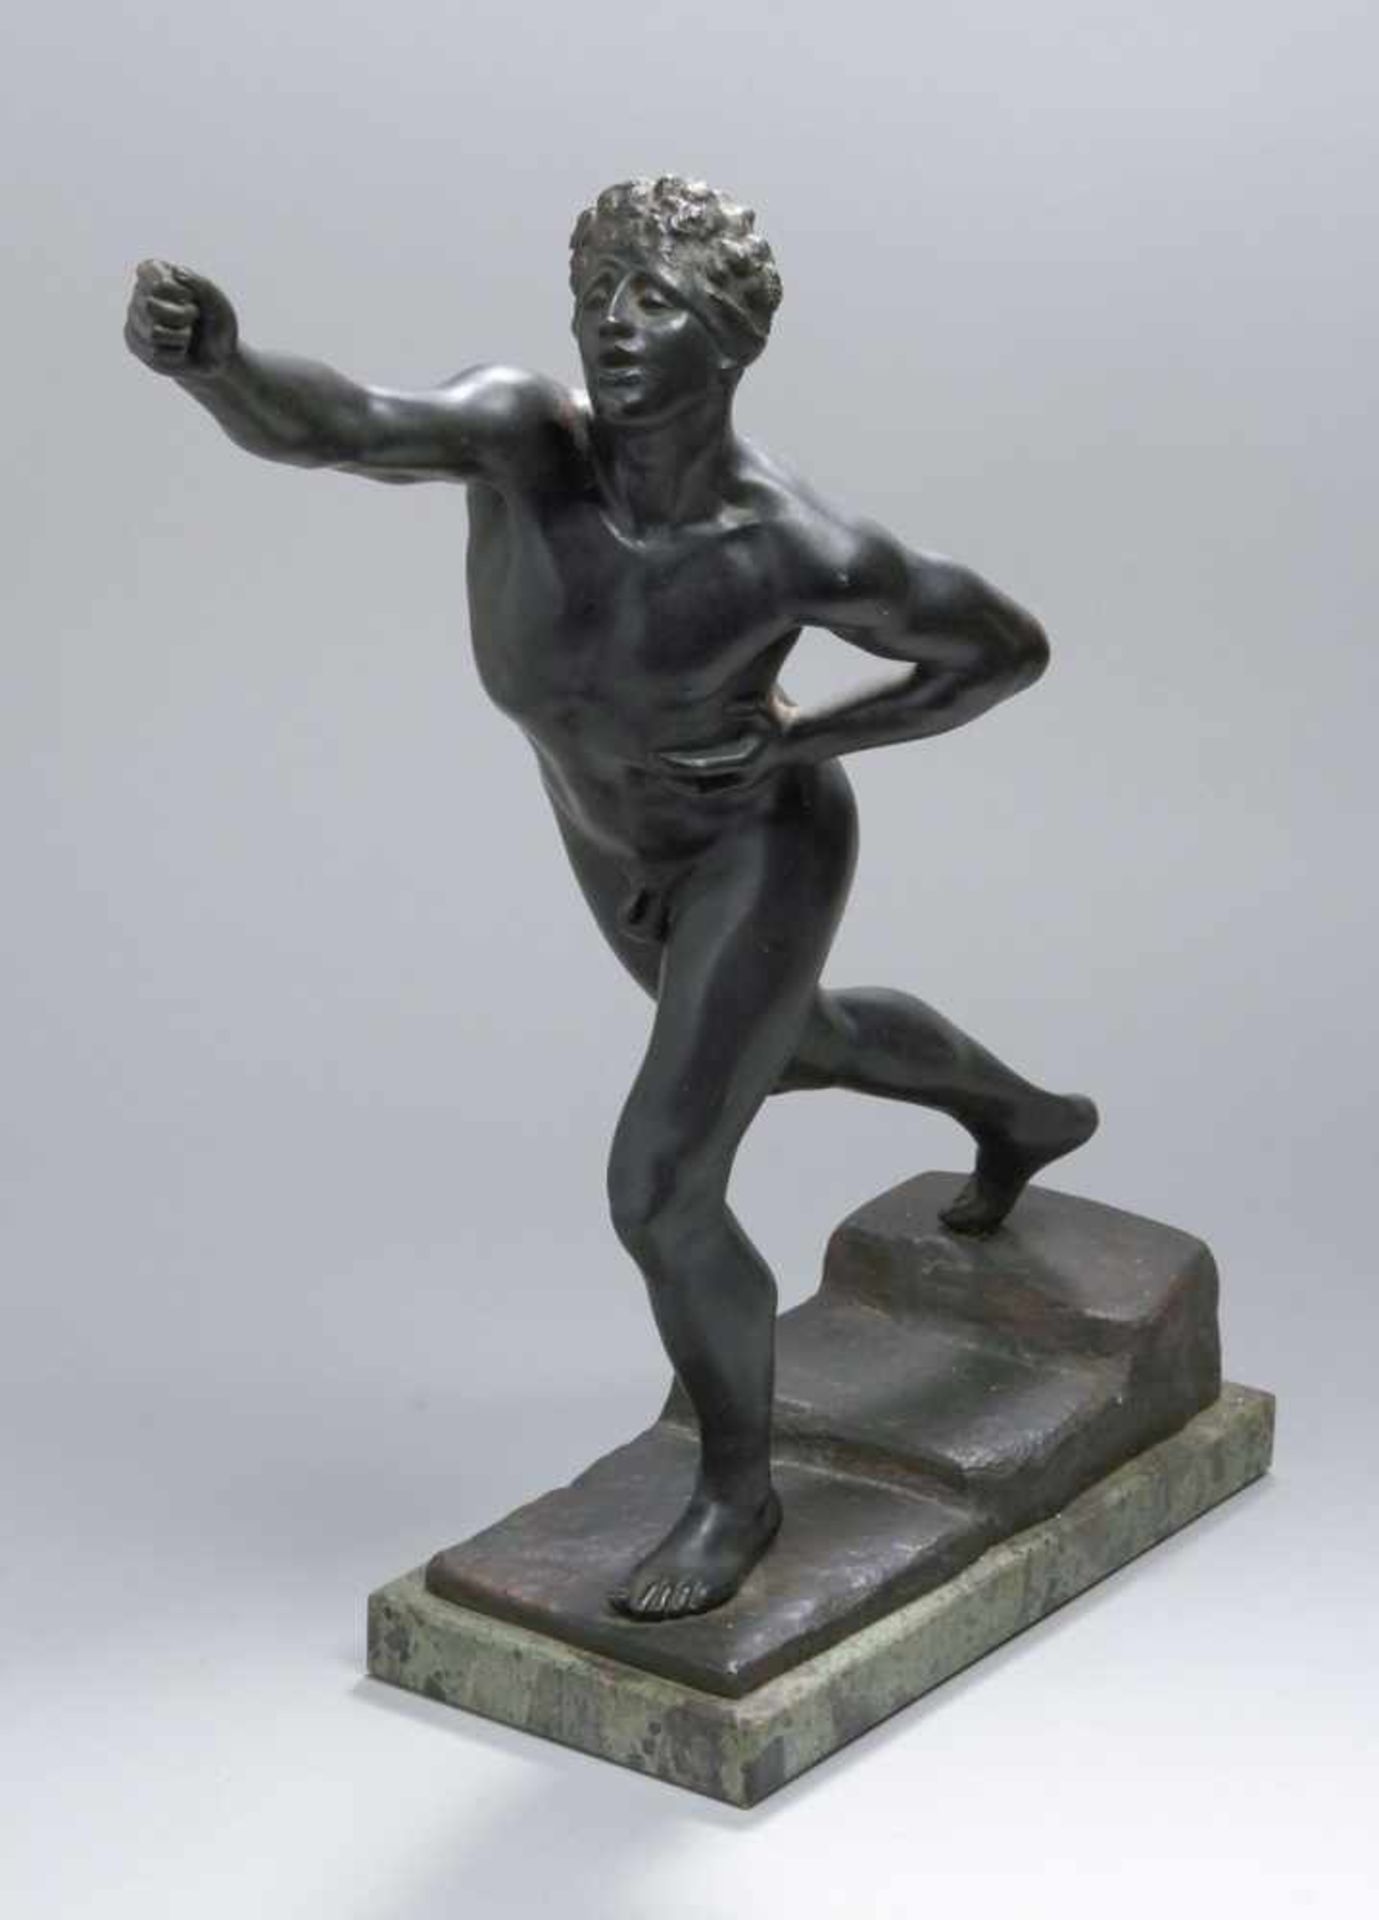 Bronze-Plastik, "Athlet", anonymer Bildhauer um 1900, vollplastische, naturalistischeDarstellung